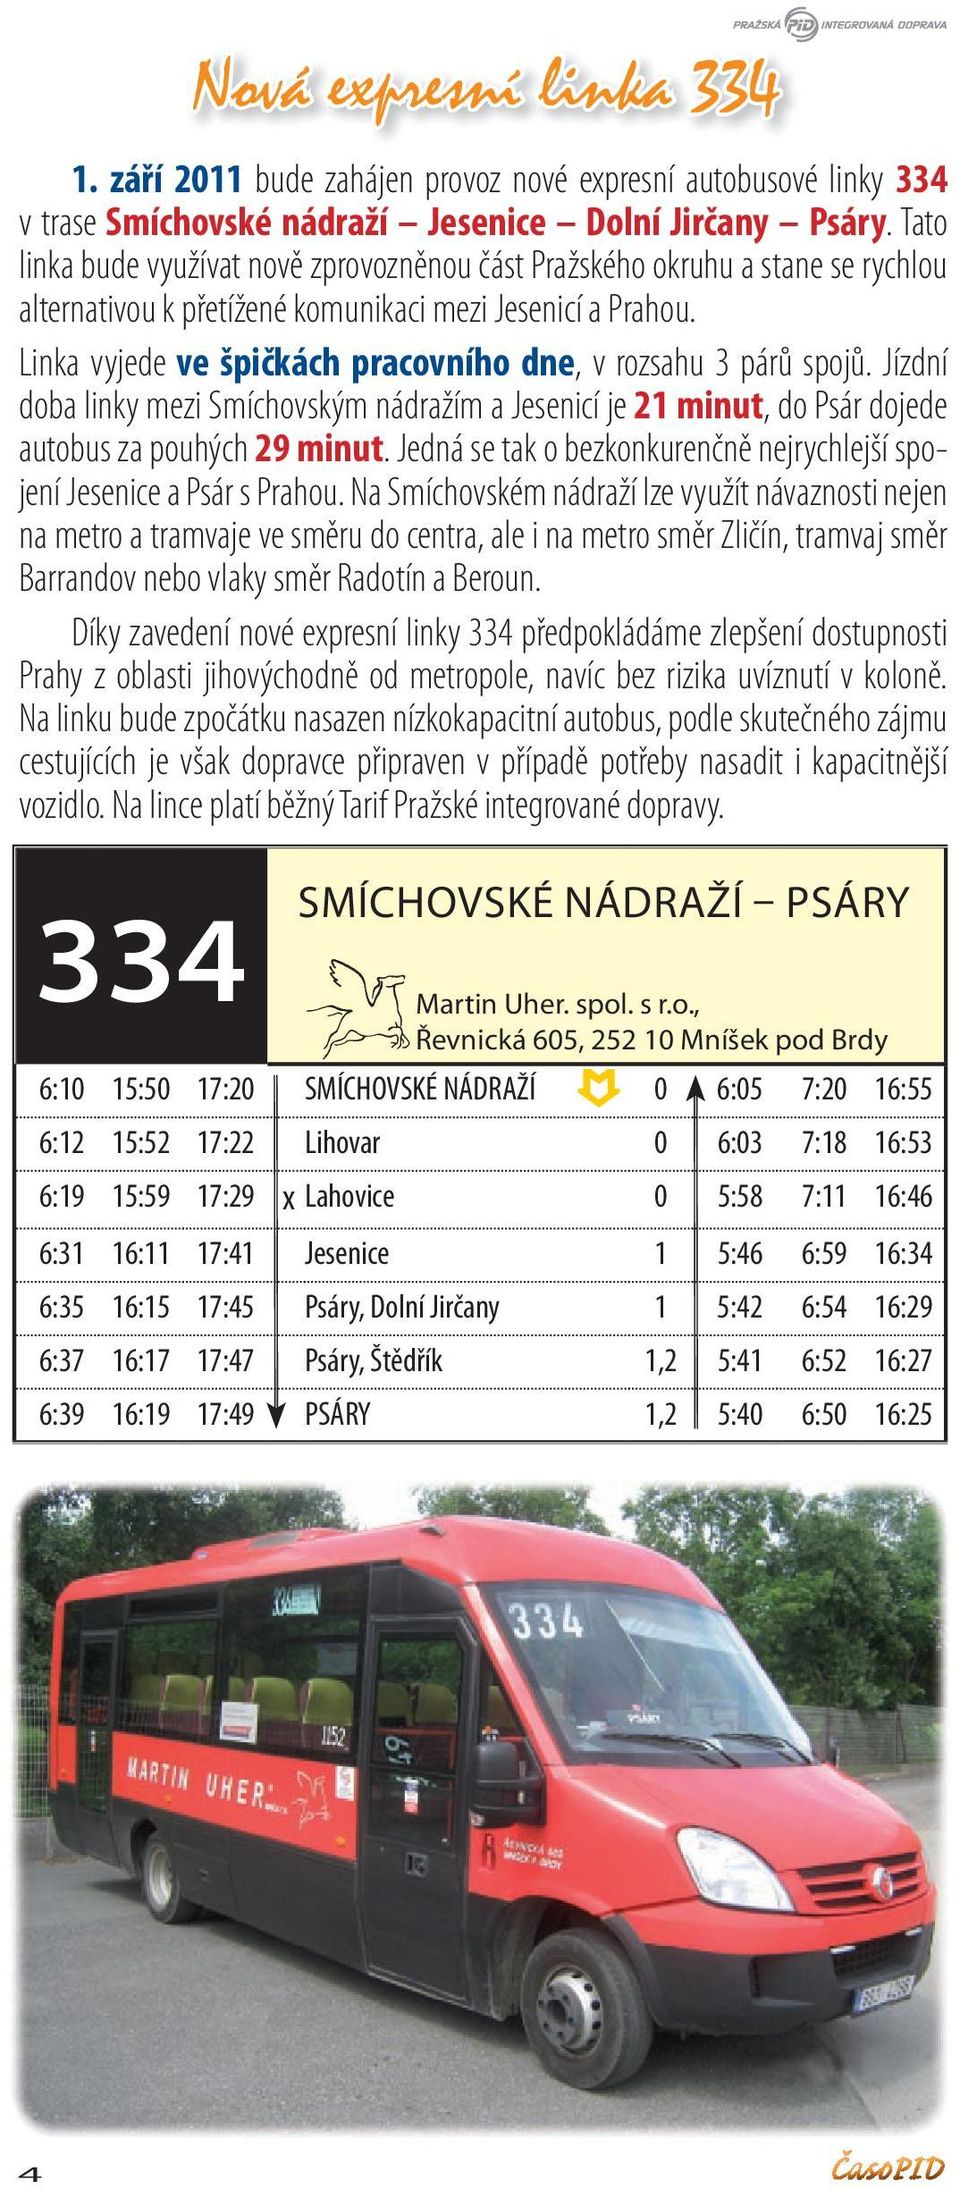 Linka vyjede ve špičkách pracovního dne, v rozsahu 3 párů spojů. Jízdní doba linky mezi Smíchovským nádražím a Jesenicí je 21 minut, do Psár dojede autobus za pouhých 29 minut.